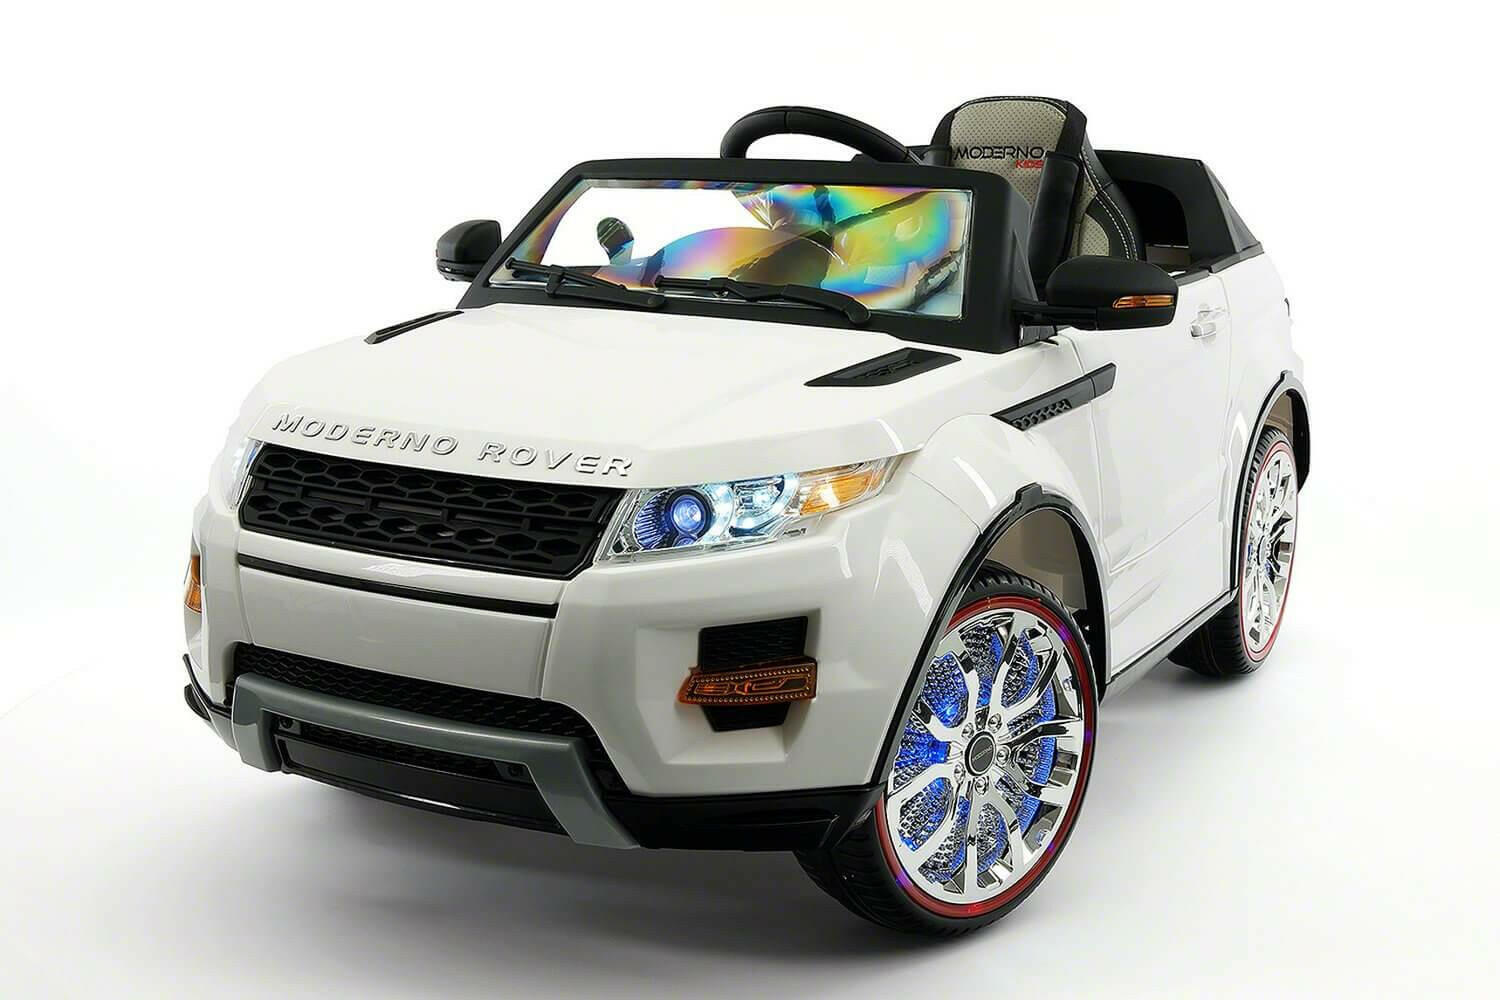 12volt Licensed Rover Truck Kids Car w/ Parent Remote, MP3, LED Lights - Kids Eye Candy 